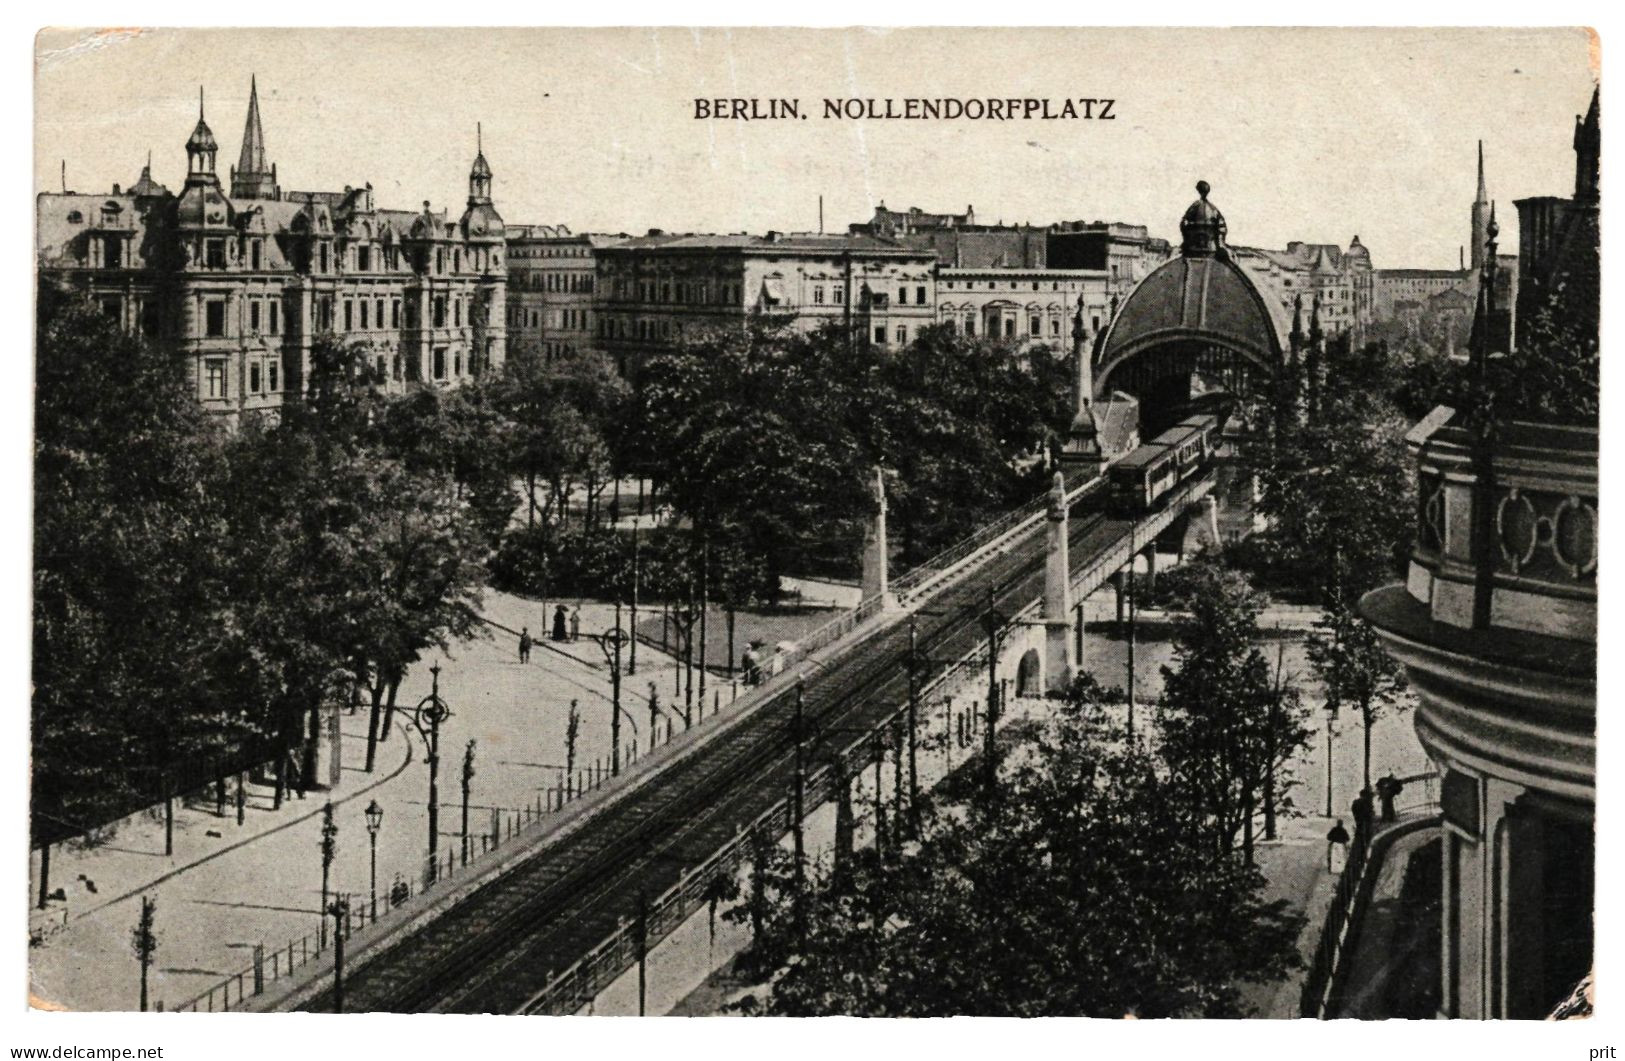 Hochbahn Nollendorfplatz Schöneberg Berlin U-Bahn 1900s Unused Glossy Lithograph Postcard - Schöneberg